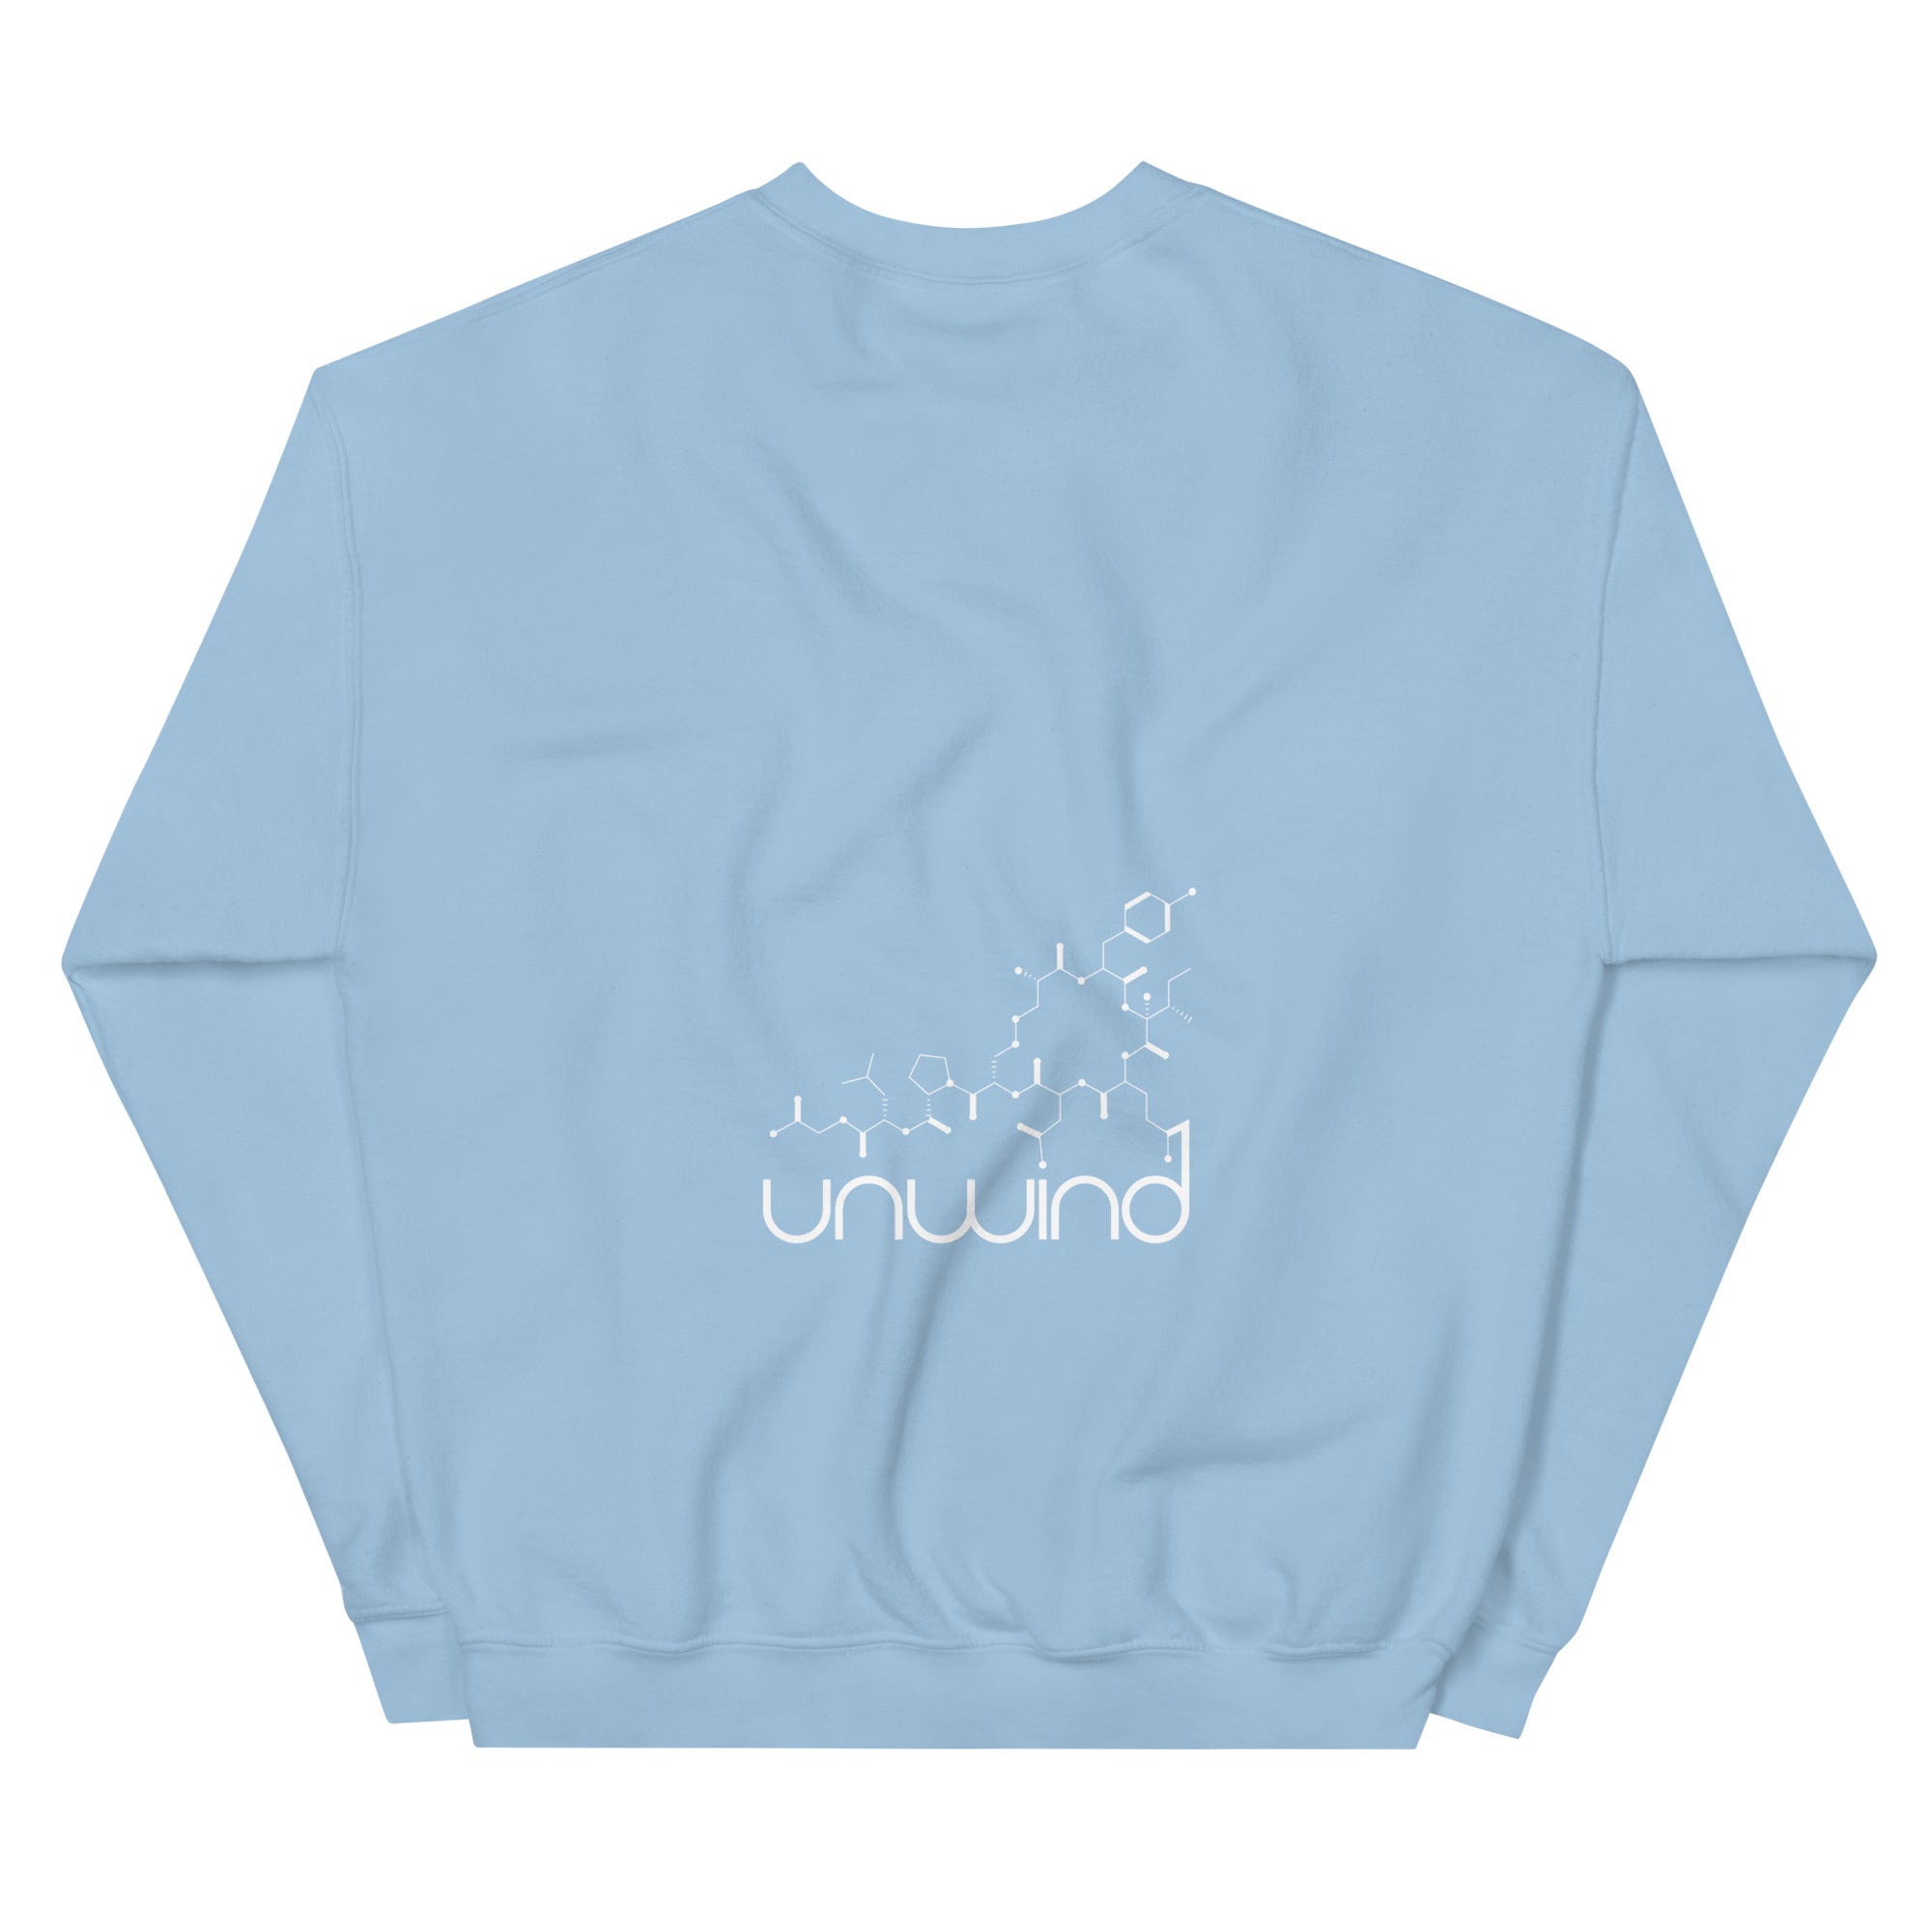 Unisex Sweatshirt THETA NEW KALE